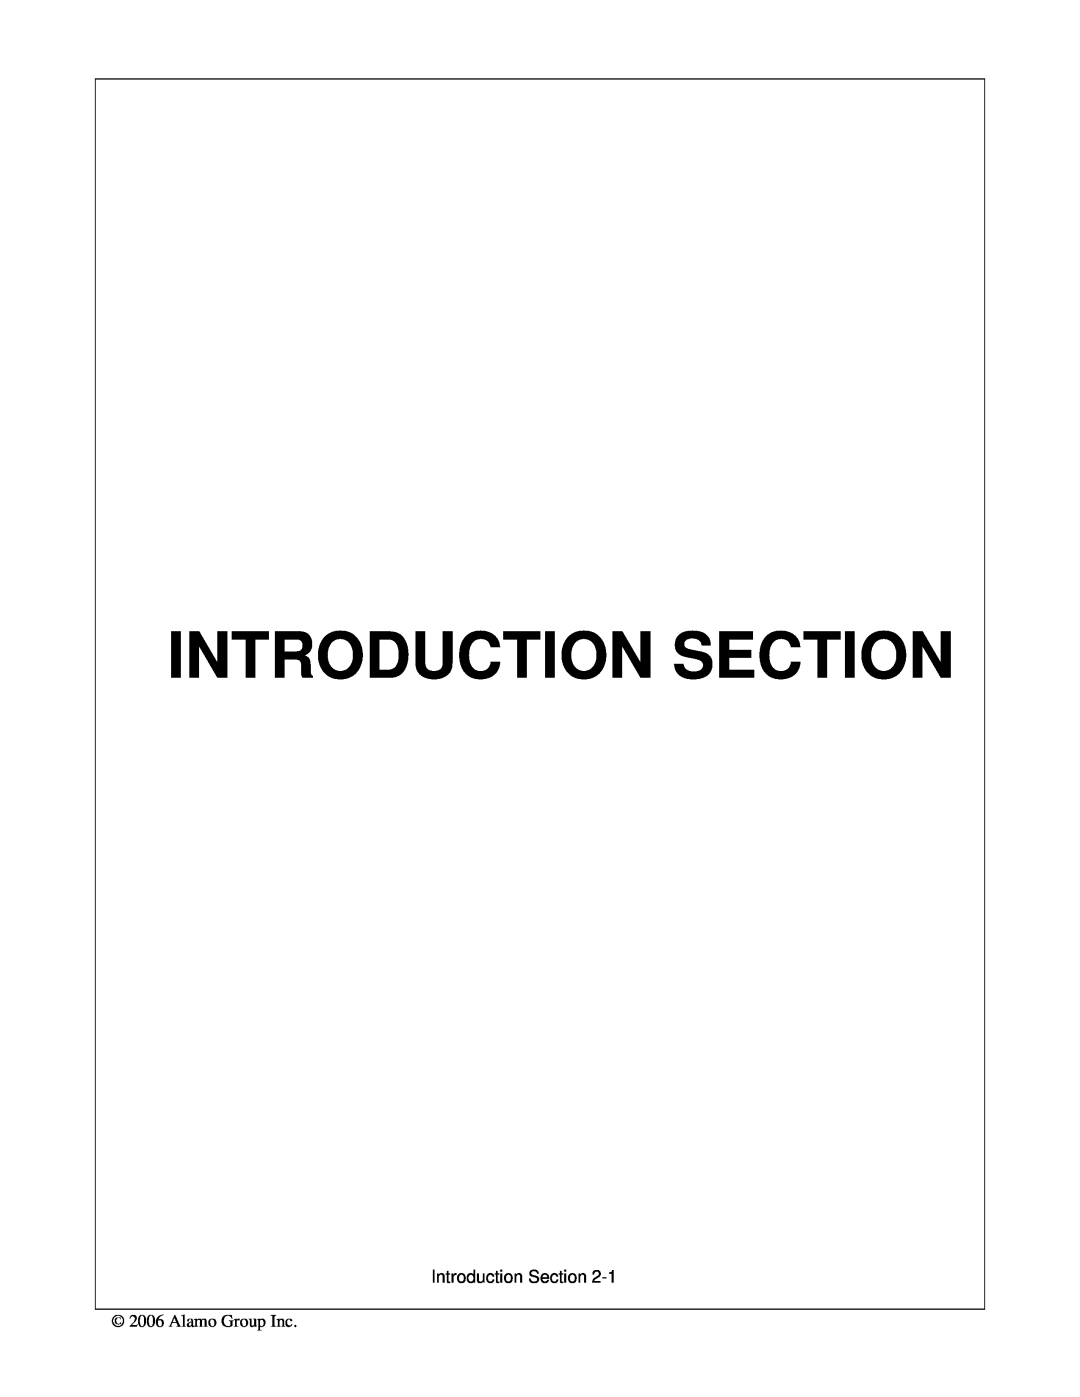 Alamo 02979718C manual Introduction Section, Alamo Group Inc 